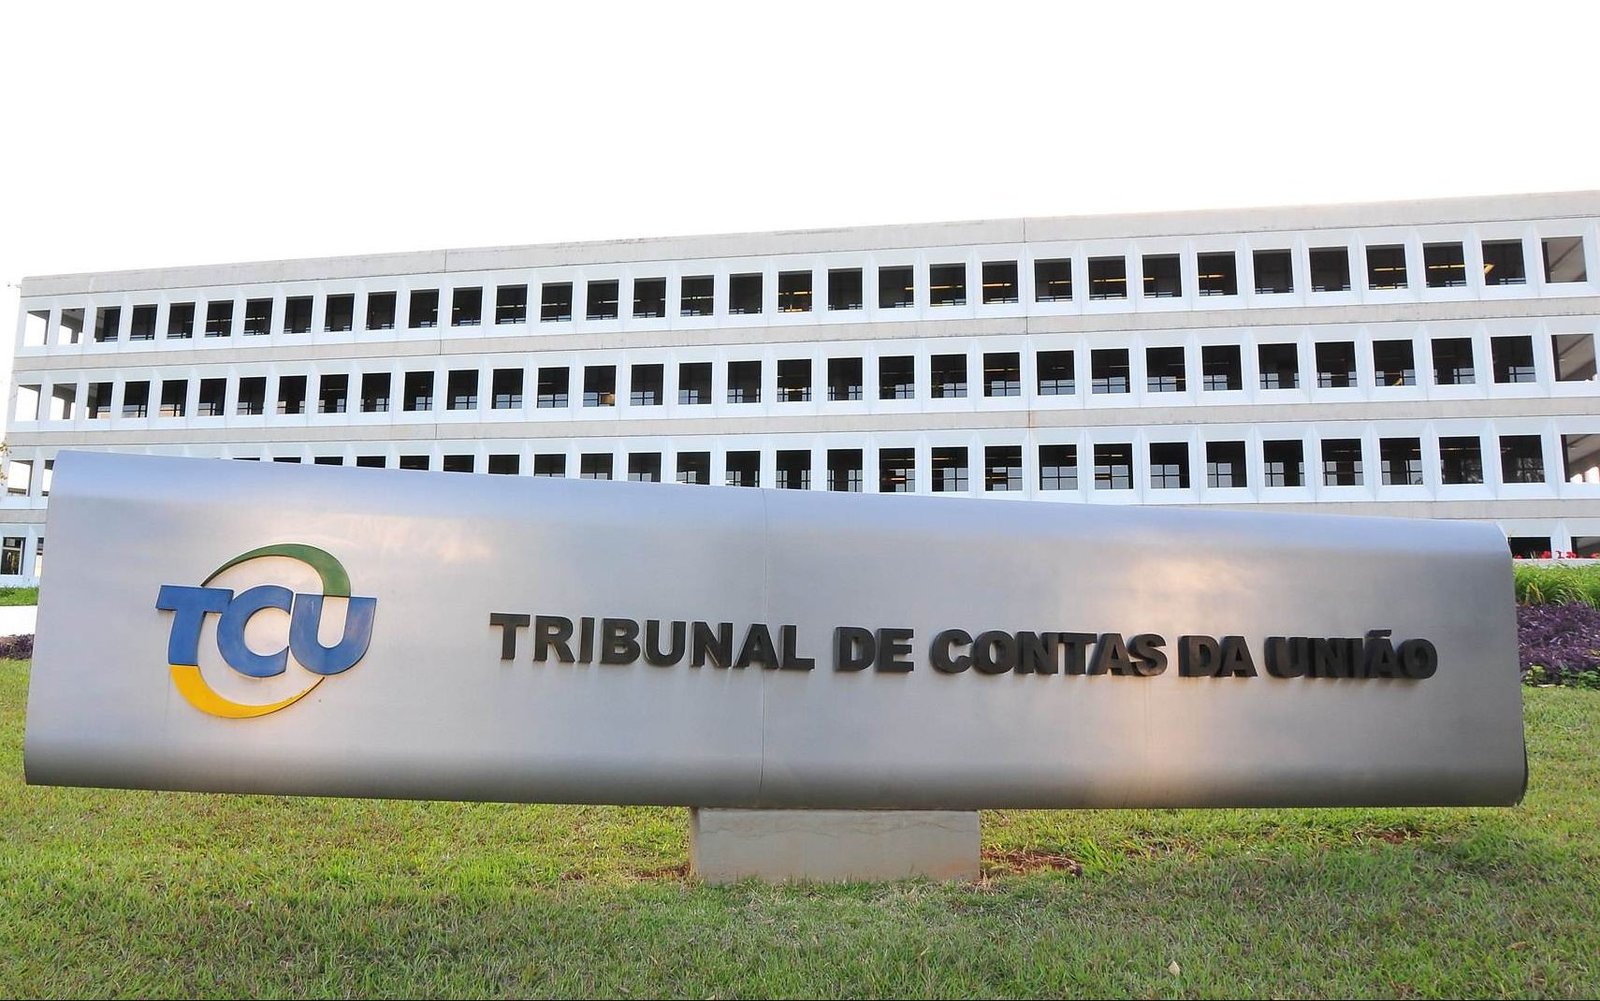 TCU “alarga” sua competência ao investigar prejuízos ambientais em Maceió, diz especialista